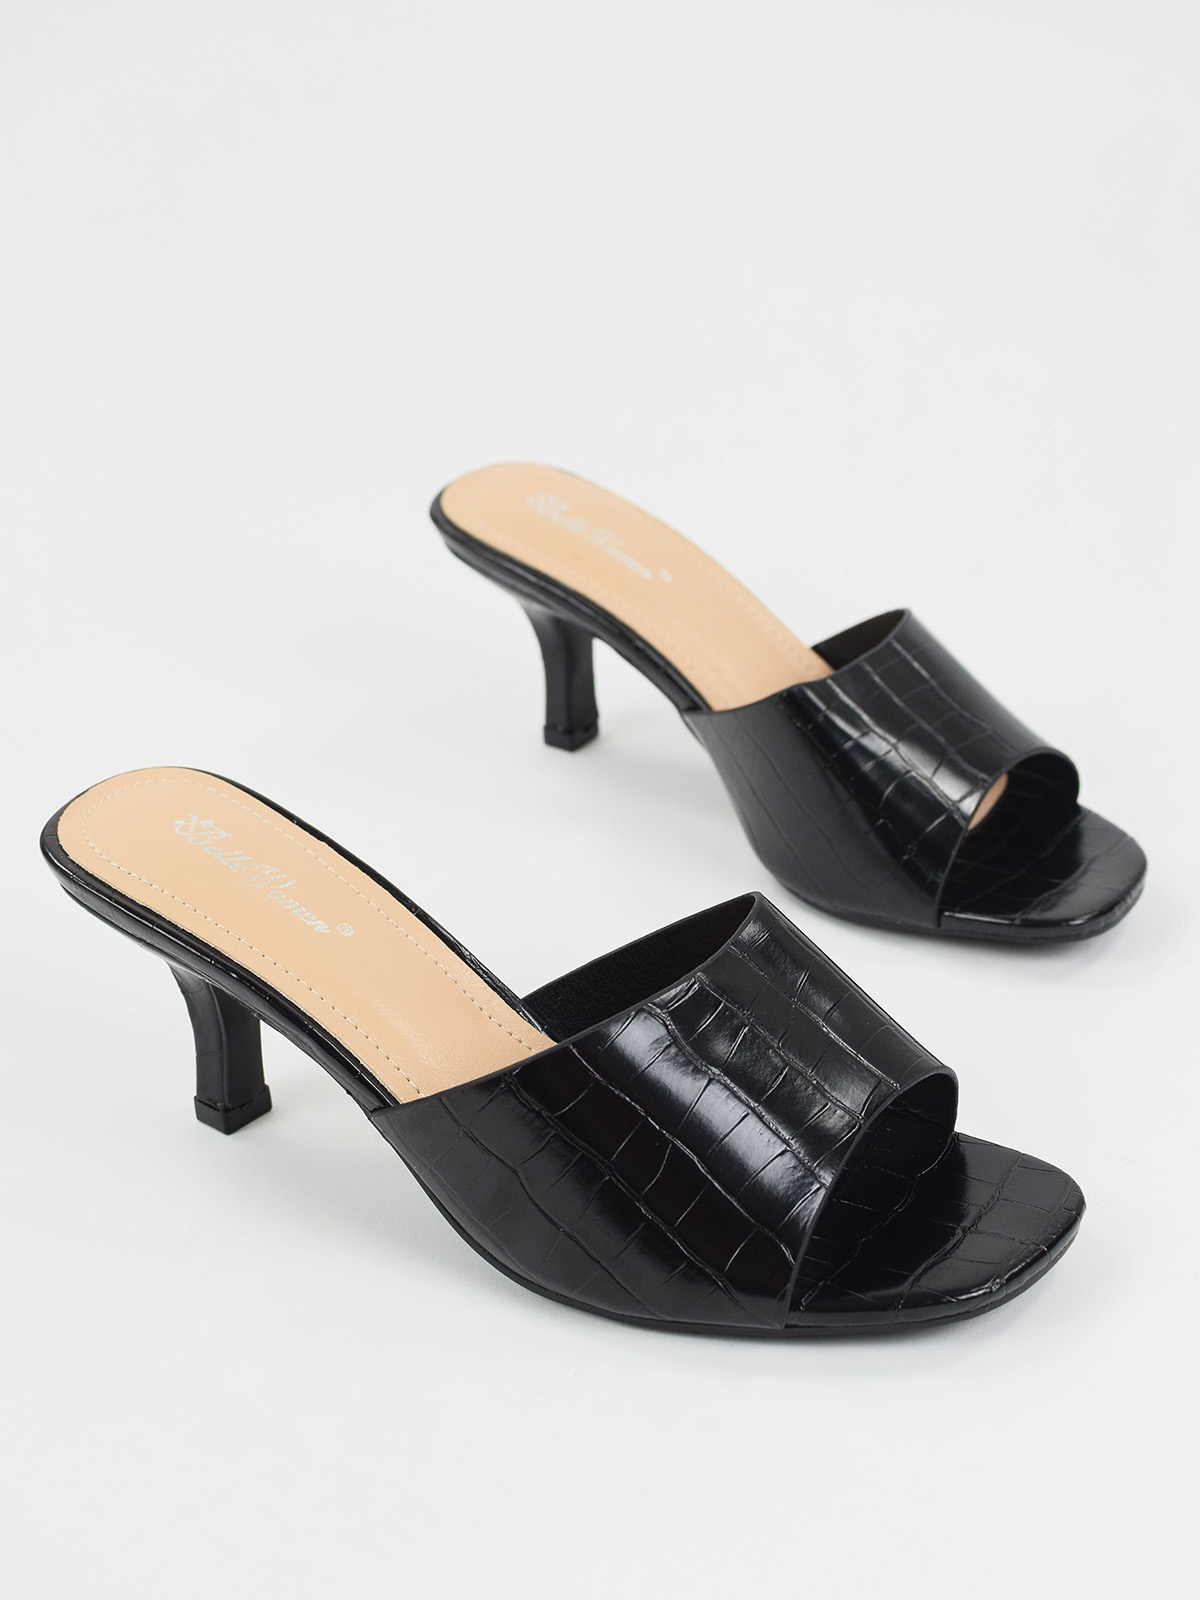 Mid heeled mule sandals in black